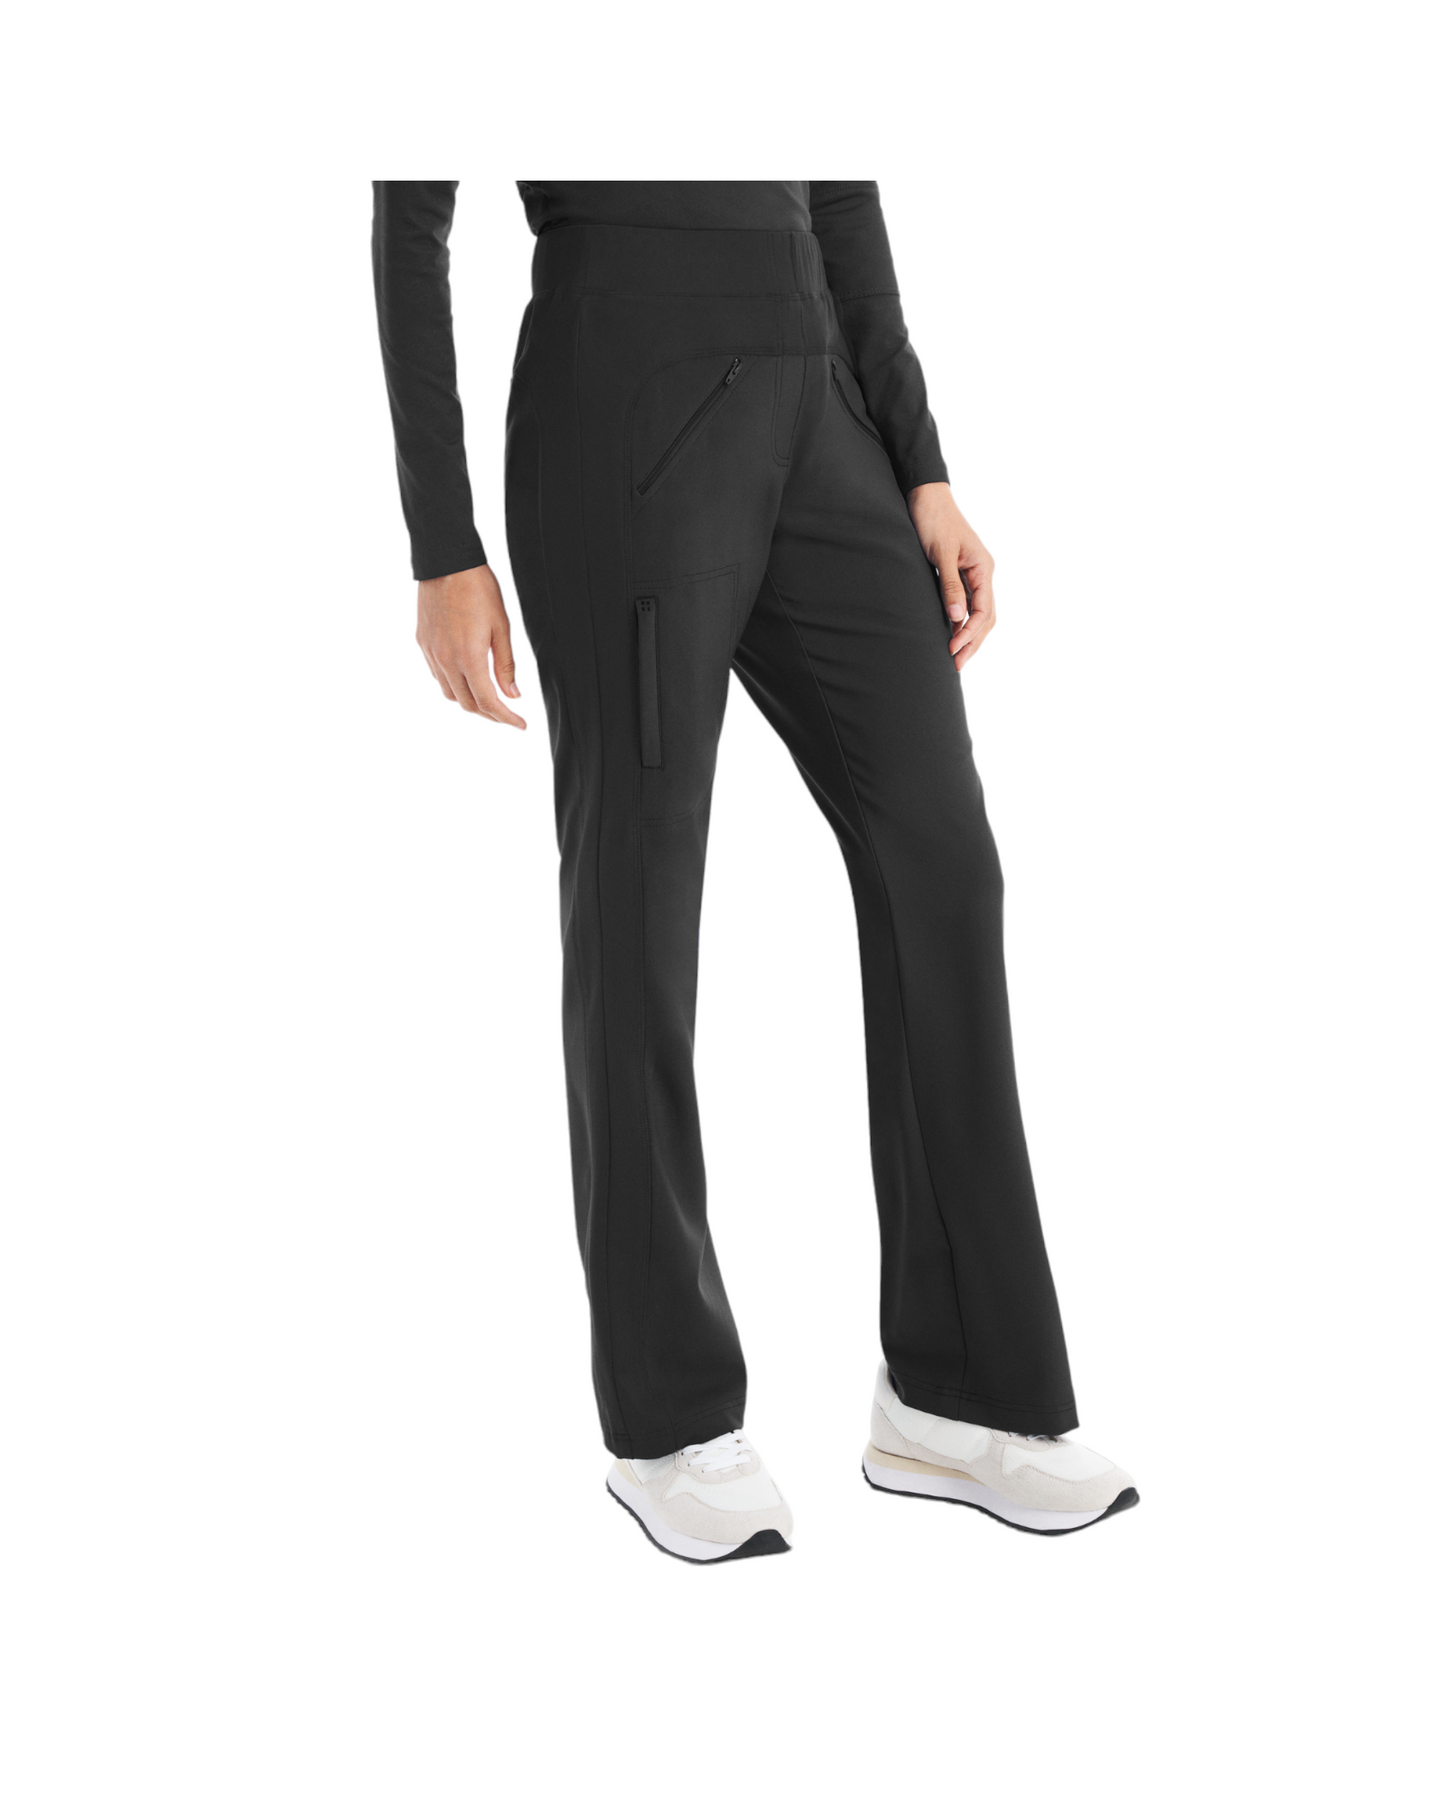 Pantalon d'uniforme jambes évasées style ''bootcut'' pour femme White Cross CRFT #WB414 couleur Pewter